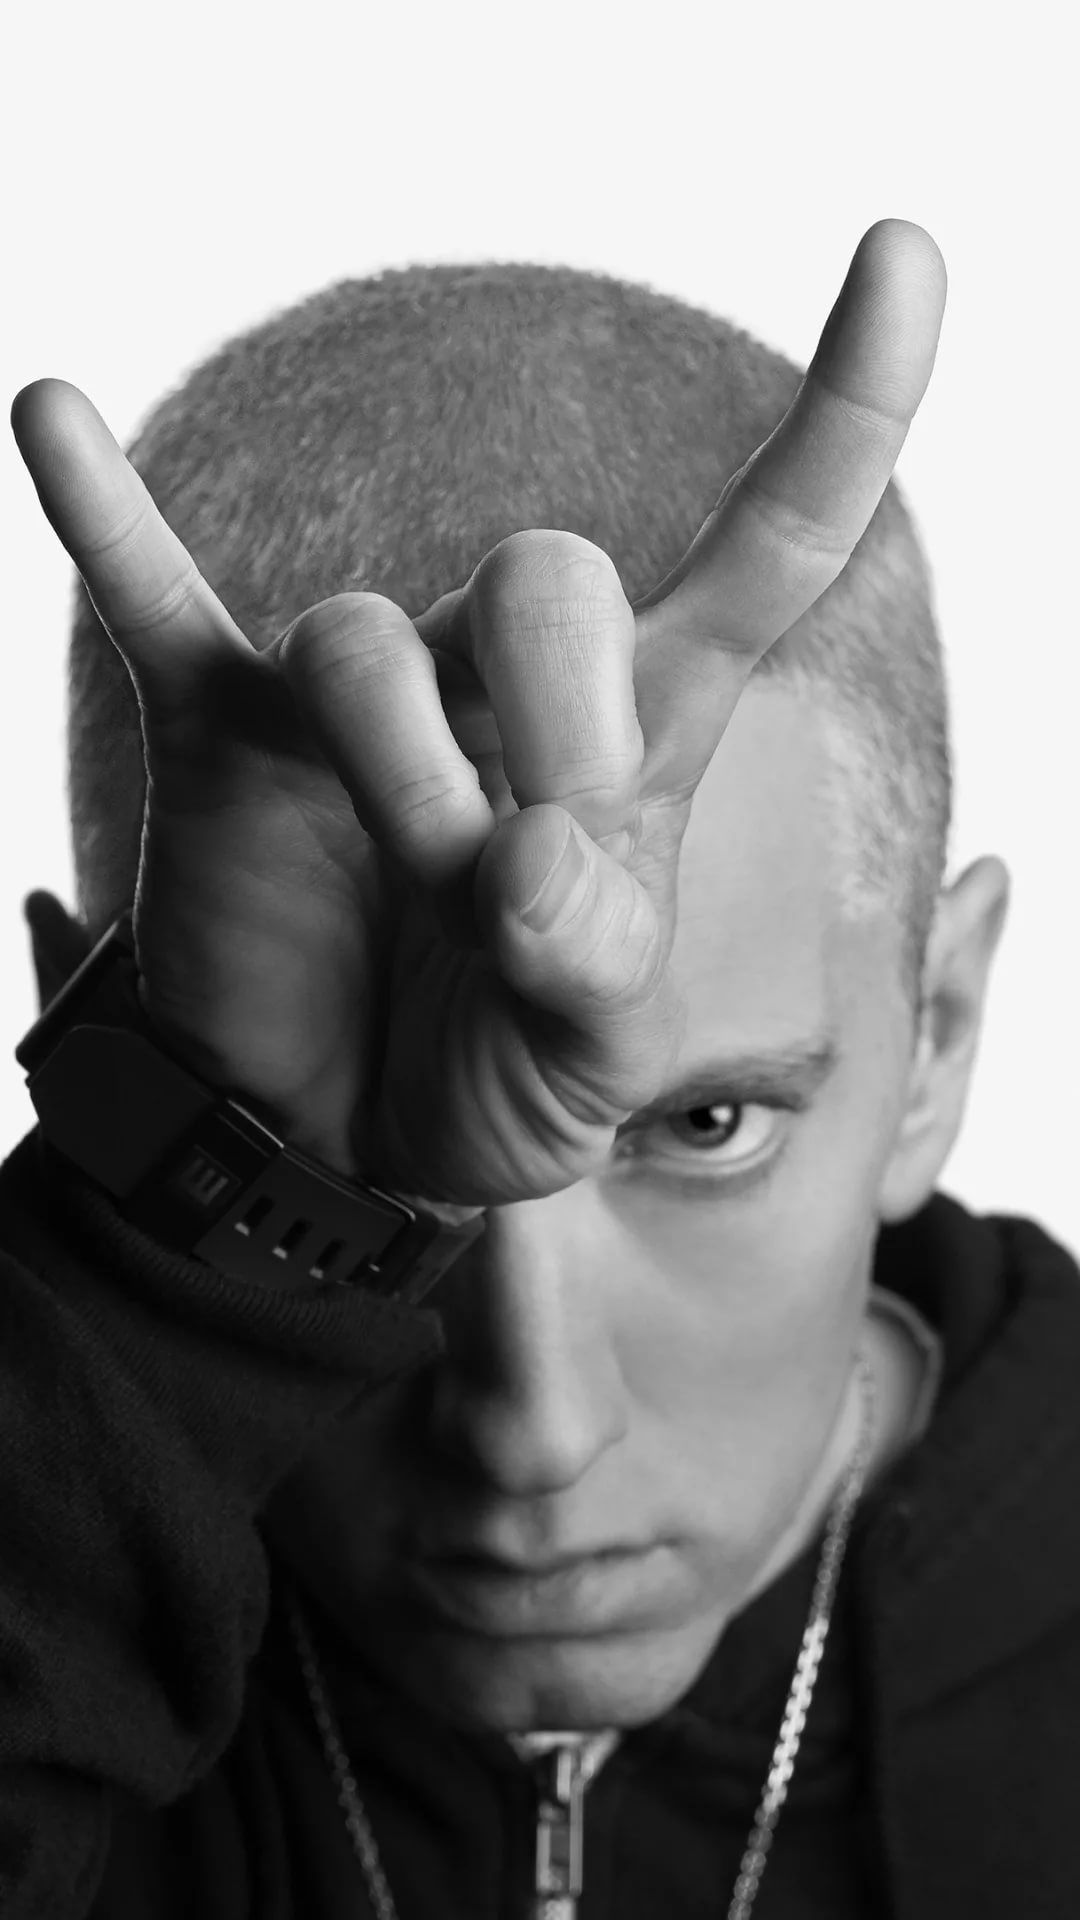 Eminem iPhone Wallpaper image .wallpaperboat.com